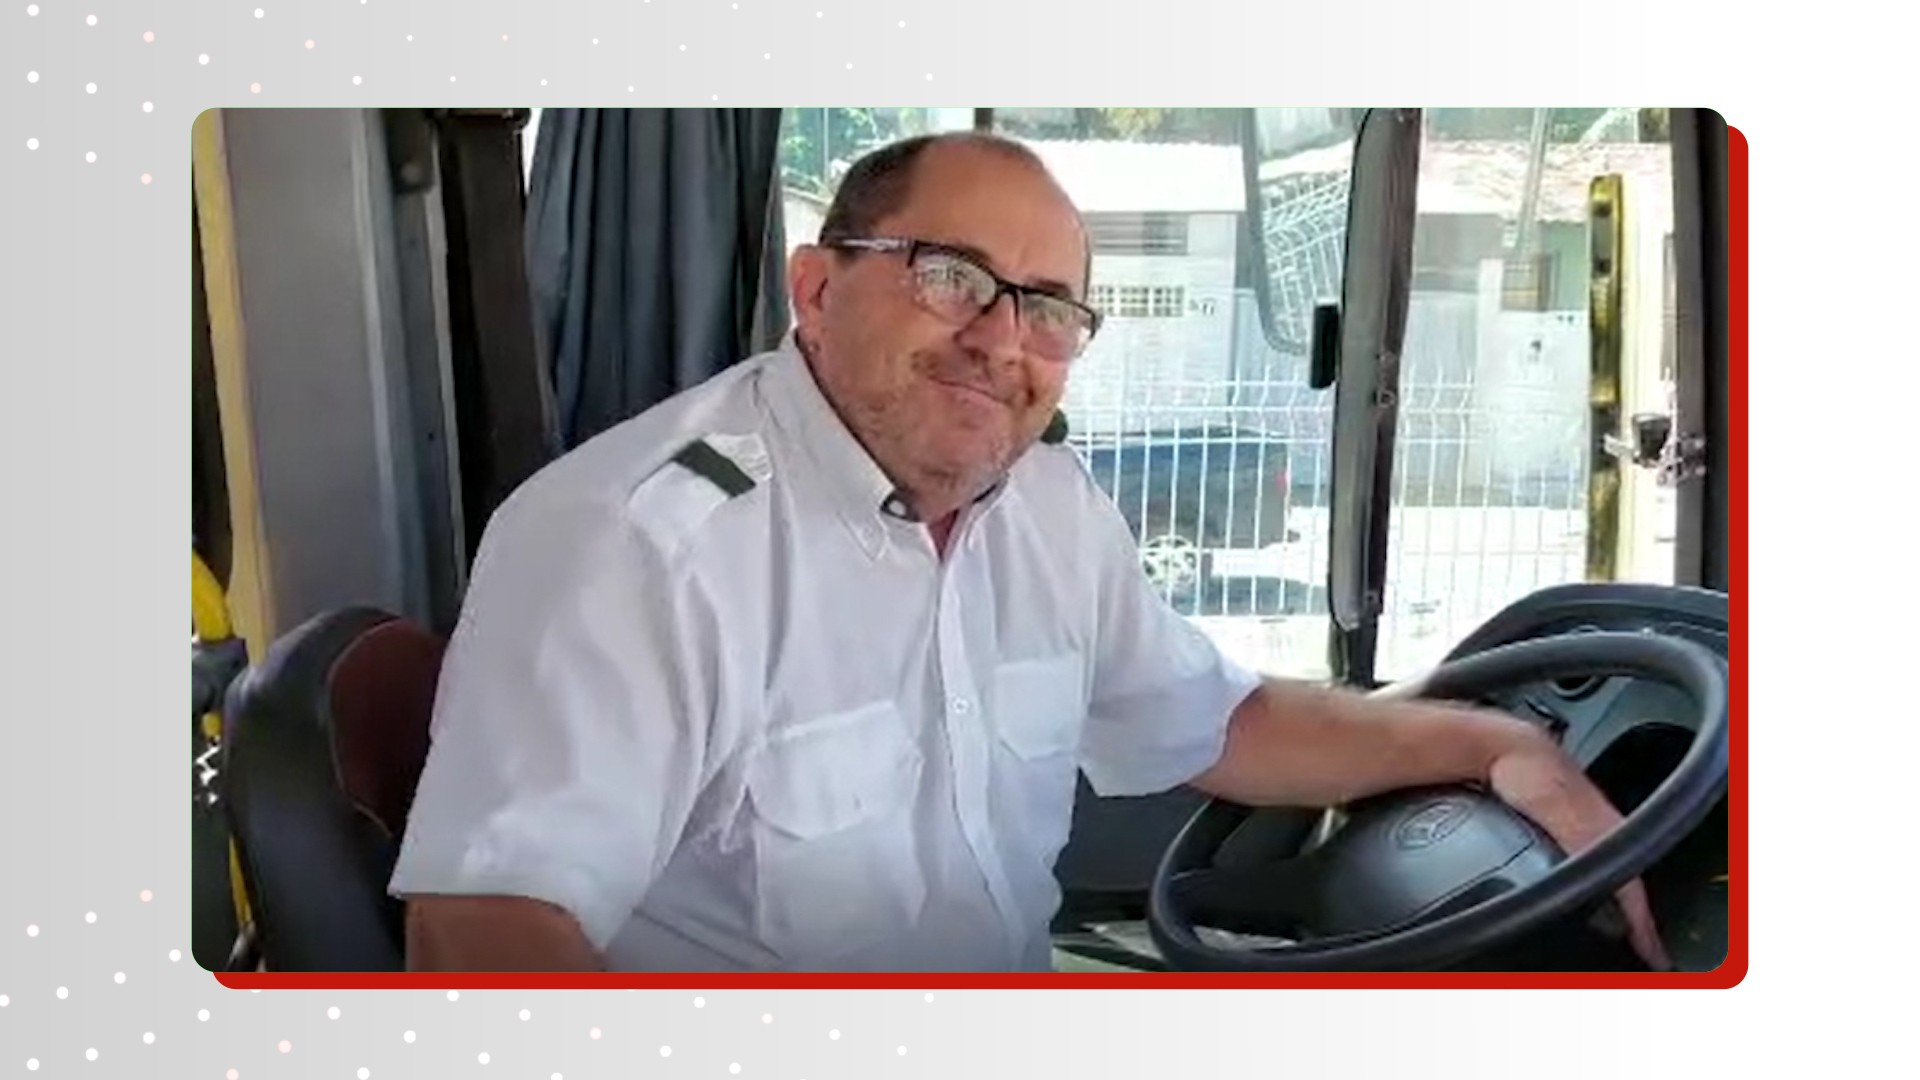 'Gosto de fazer o bem', diz motorista que desceu de ônibus para ajudar mulher com deficiência visual, em João Pessoa